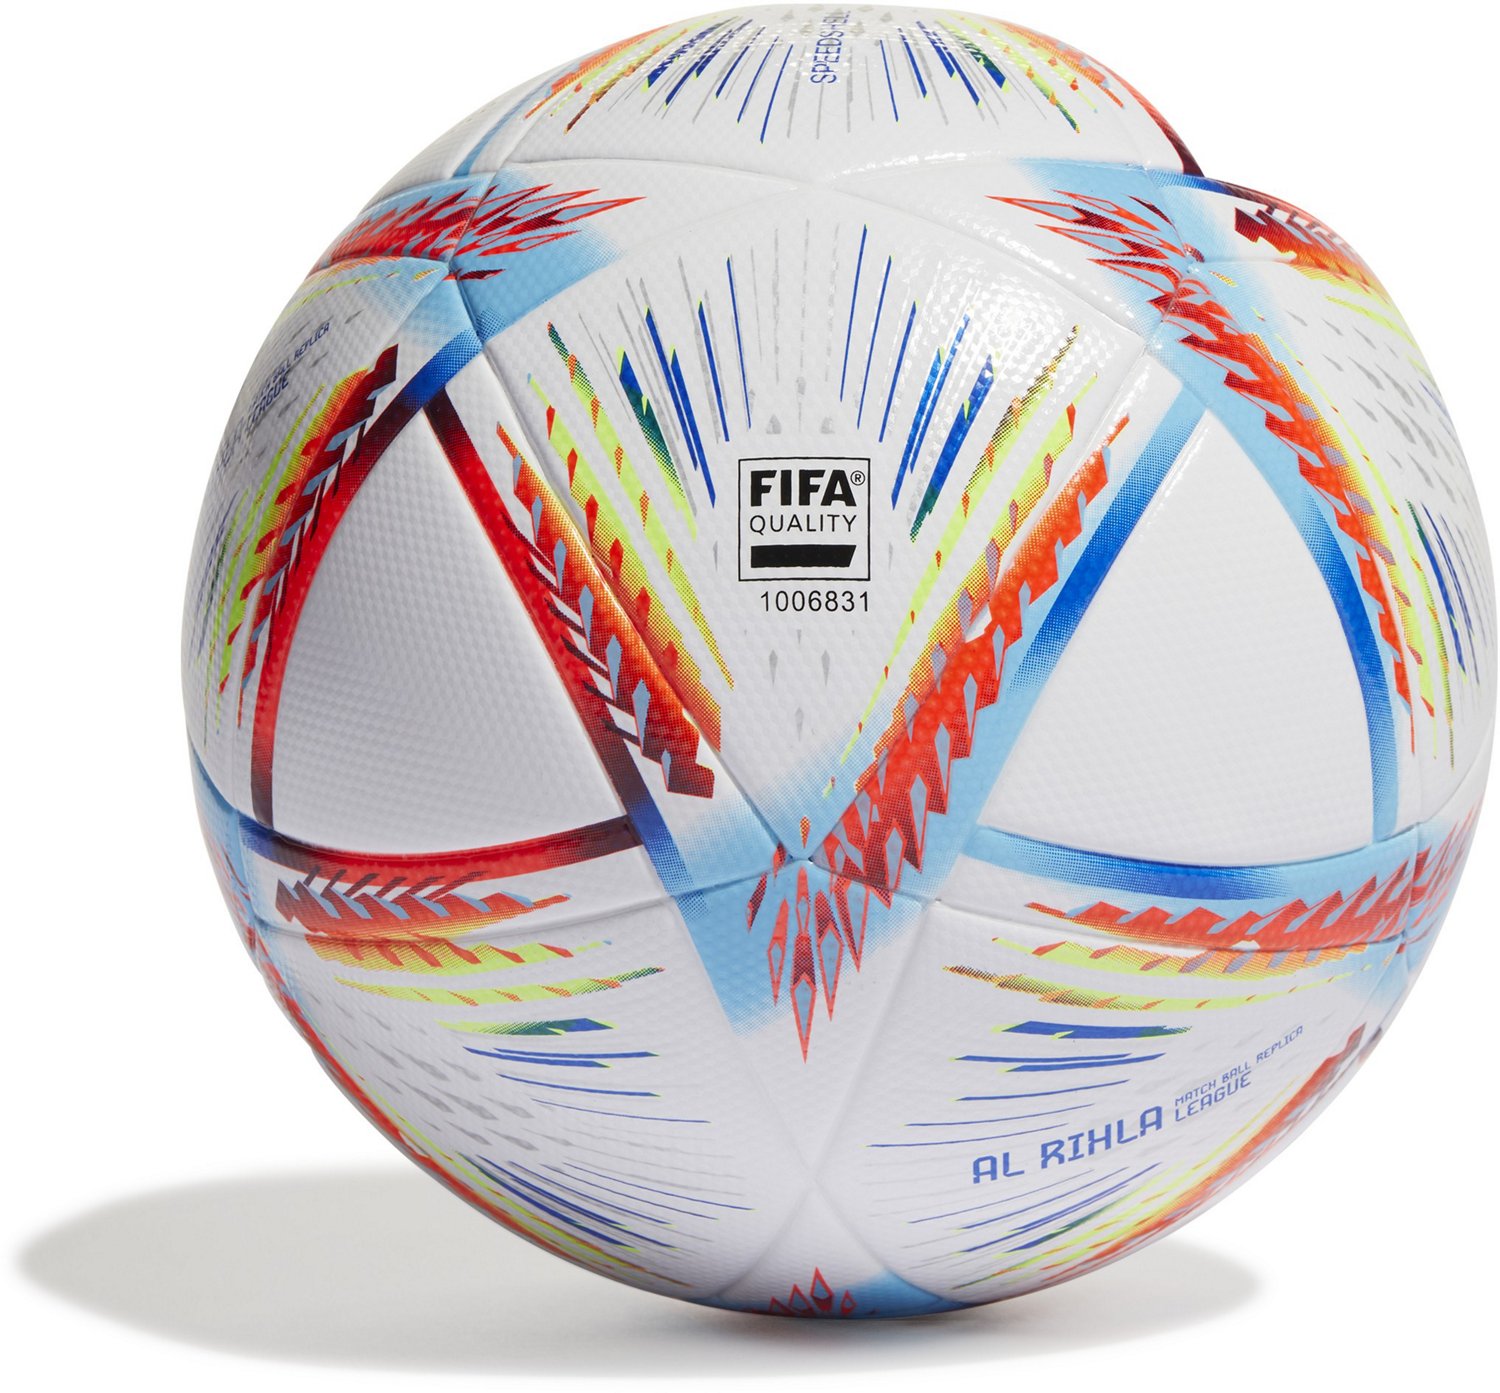 Adidas 2022 World Cup League Soccer Ball Academy